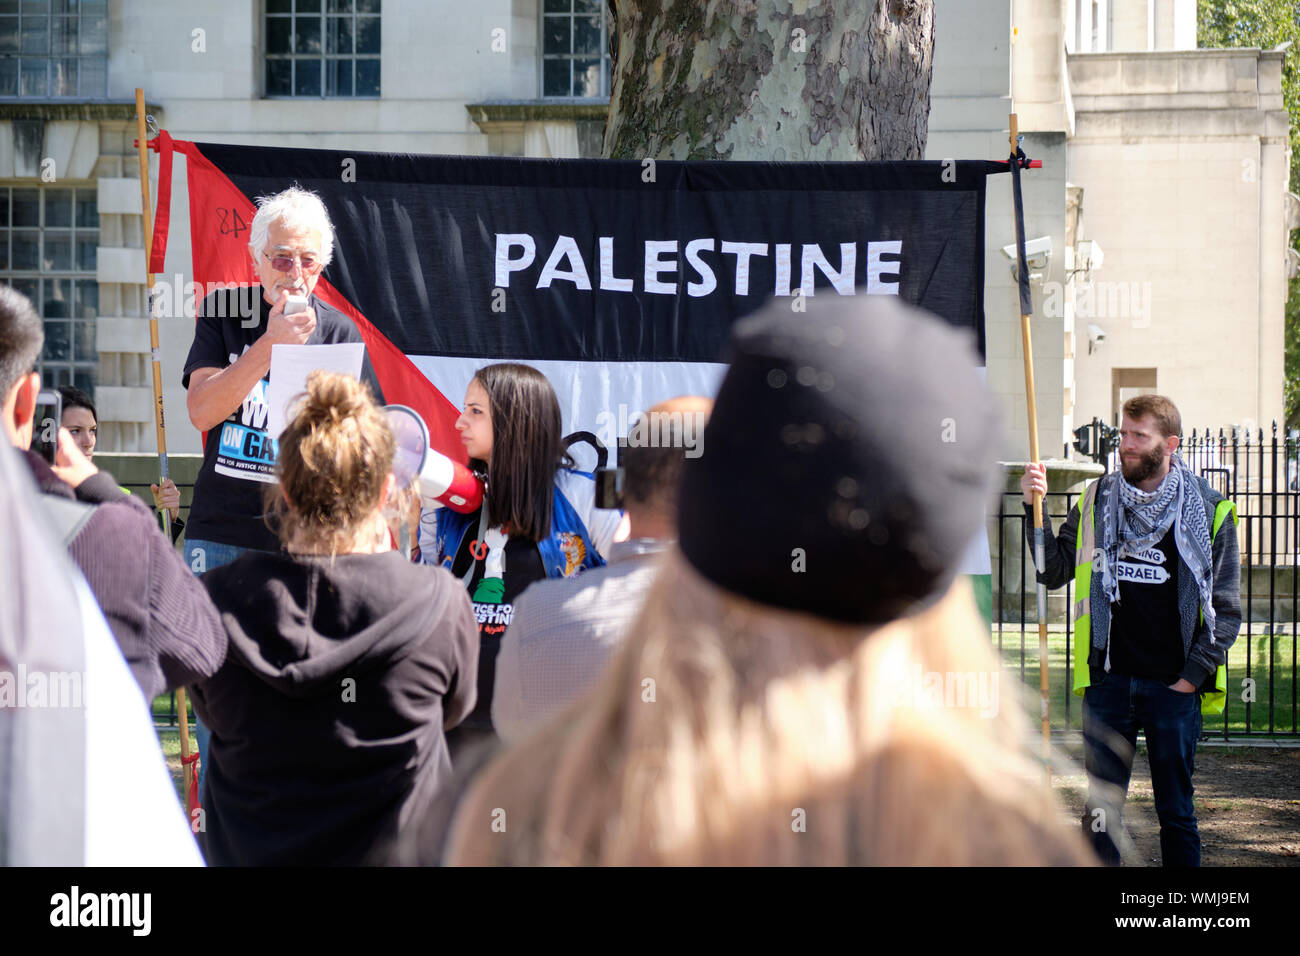 London, Großbritannien. September 2019. Glyn Secker spricht Hunderte an, die mit Schildern und Flaggen versammelt sind, um das spontane Treffen der Führer unter schwerer Polizeiüberwachung anzuprangern Pro-palästinensische Unterstützer in London ziehen sich über die Downing Street 10, um gegen den Besuch des israelischen Premierministers zu protestieren Stockfoto